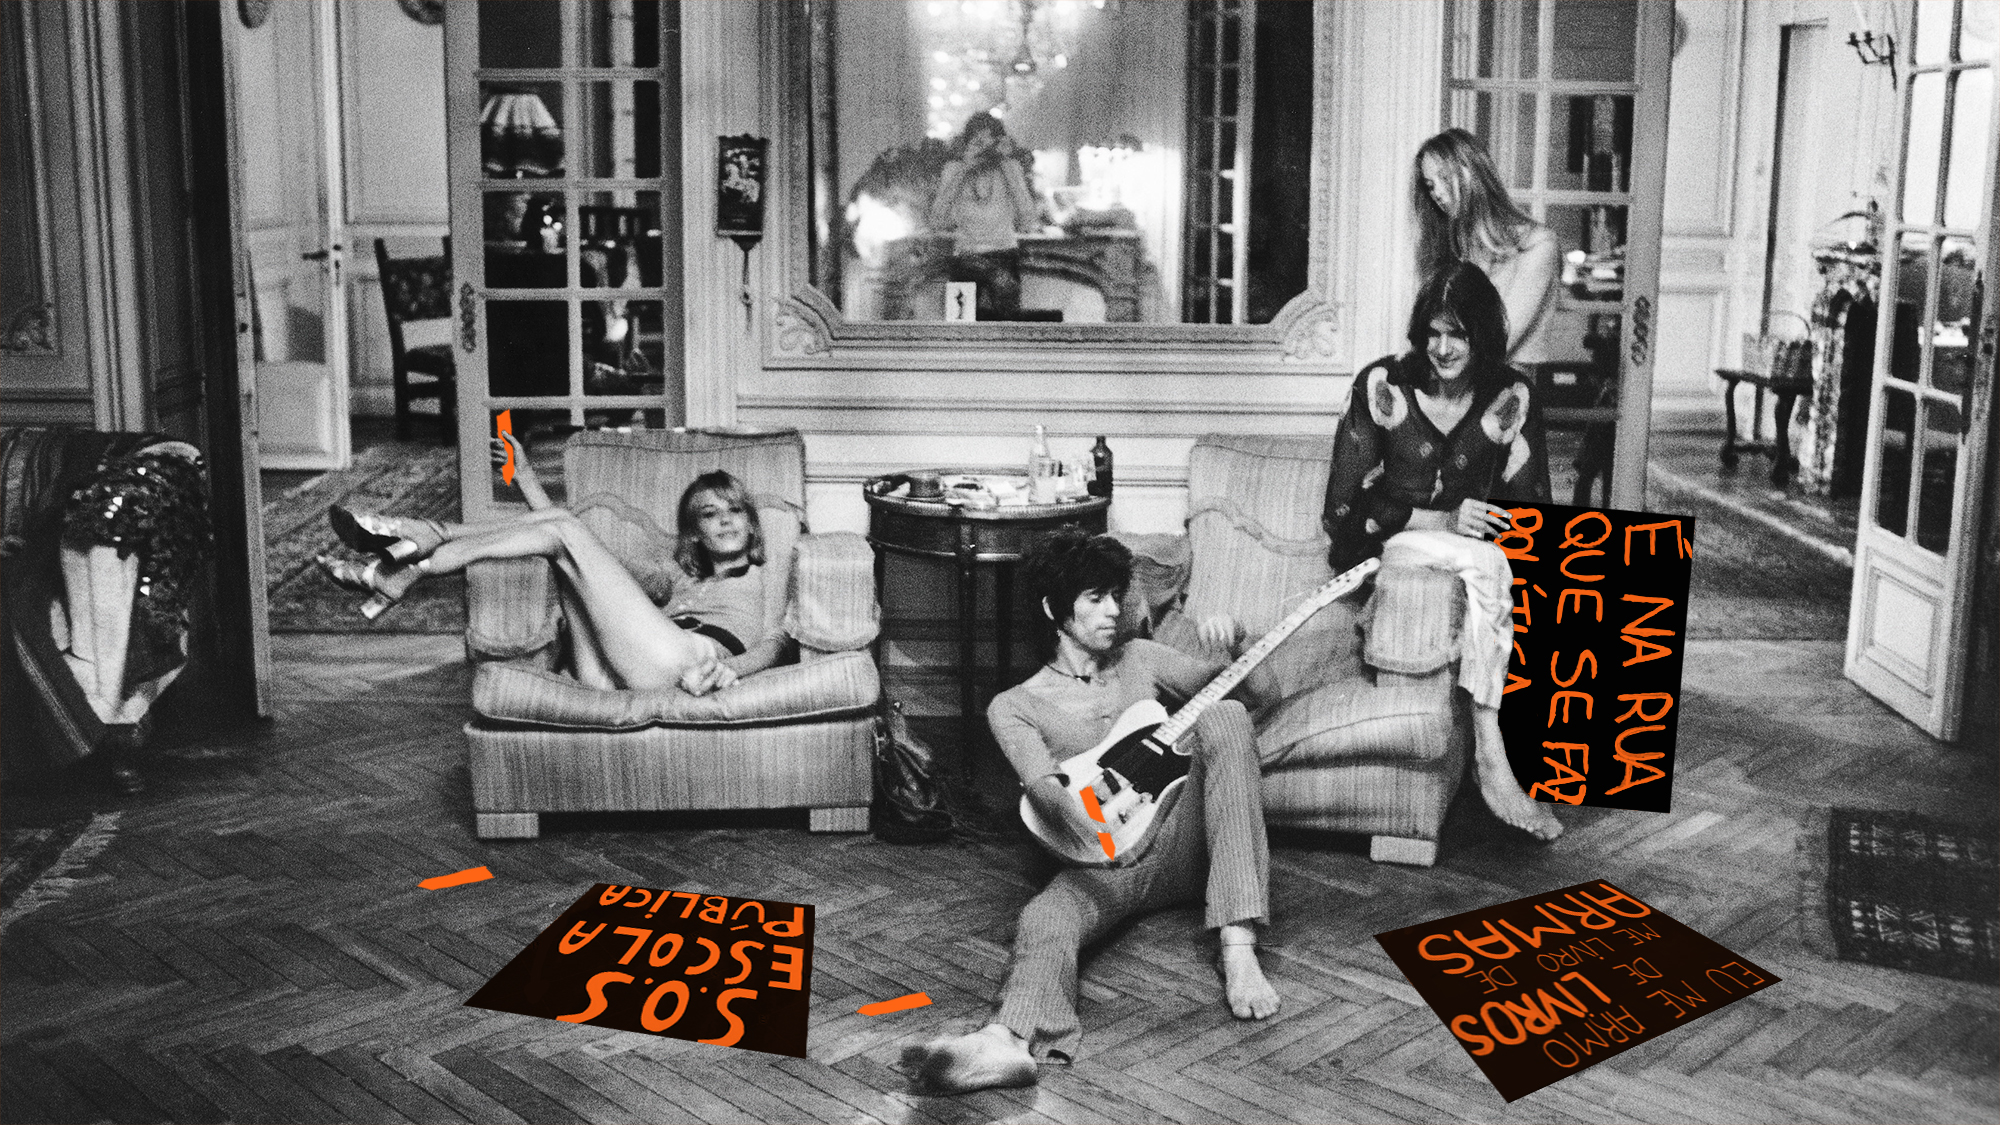 Colagem e intervenção em foto da banda Rolling Stones produzindo cartazes para manifestação com detalhes em laranja